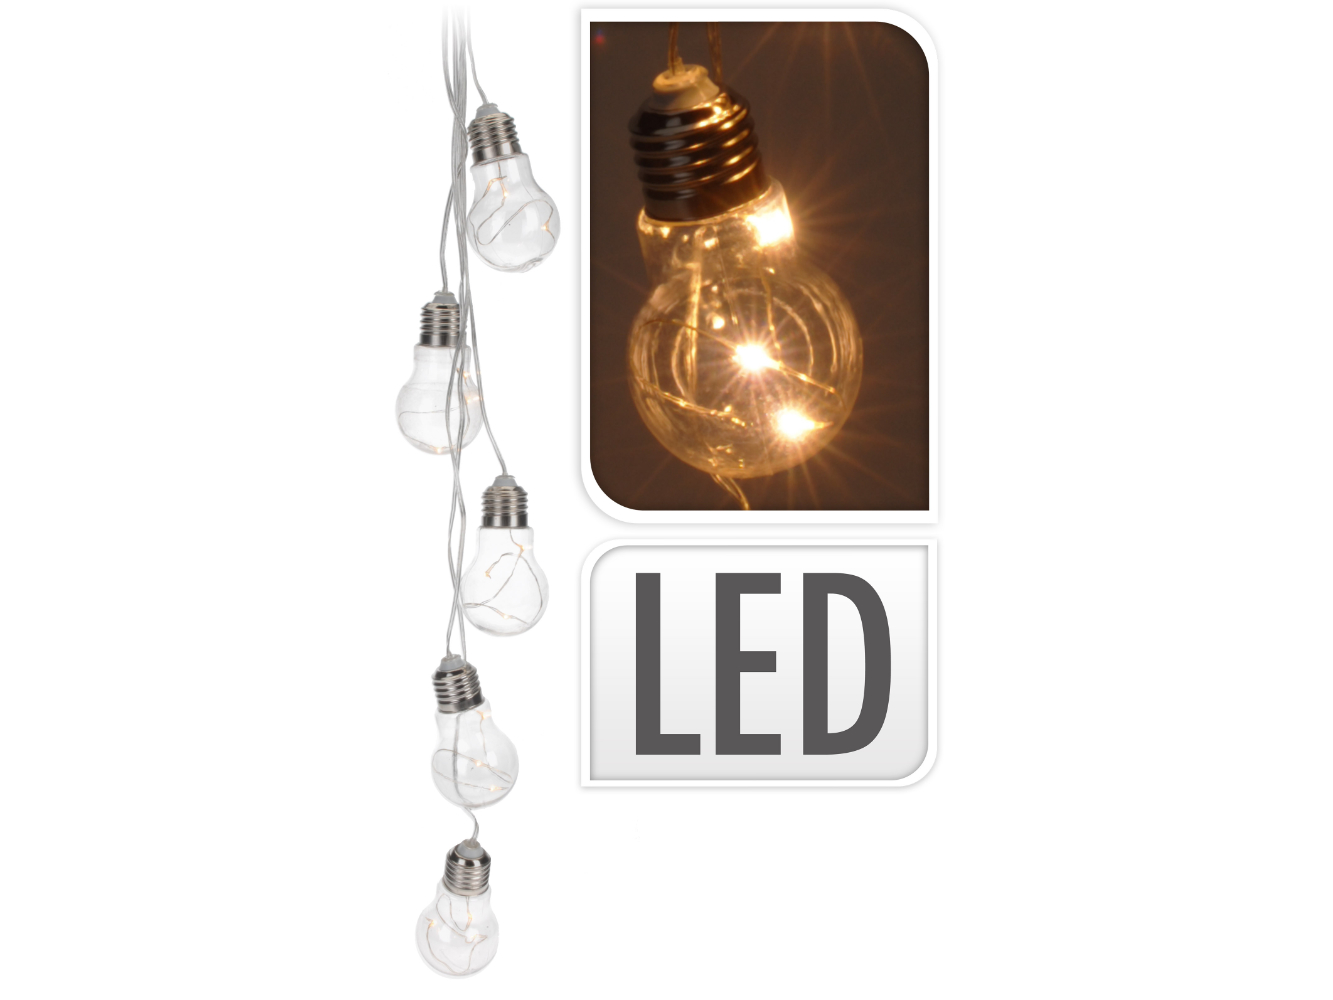 LED Glühbirne Lichterkette zum hängen, warm-weiß, 15 LED, 5 Glühbirnen